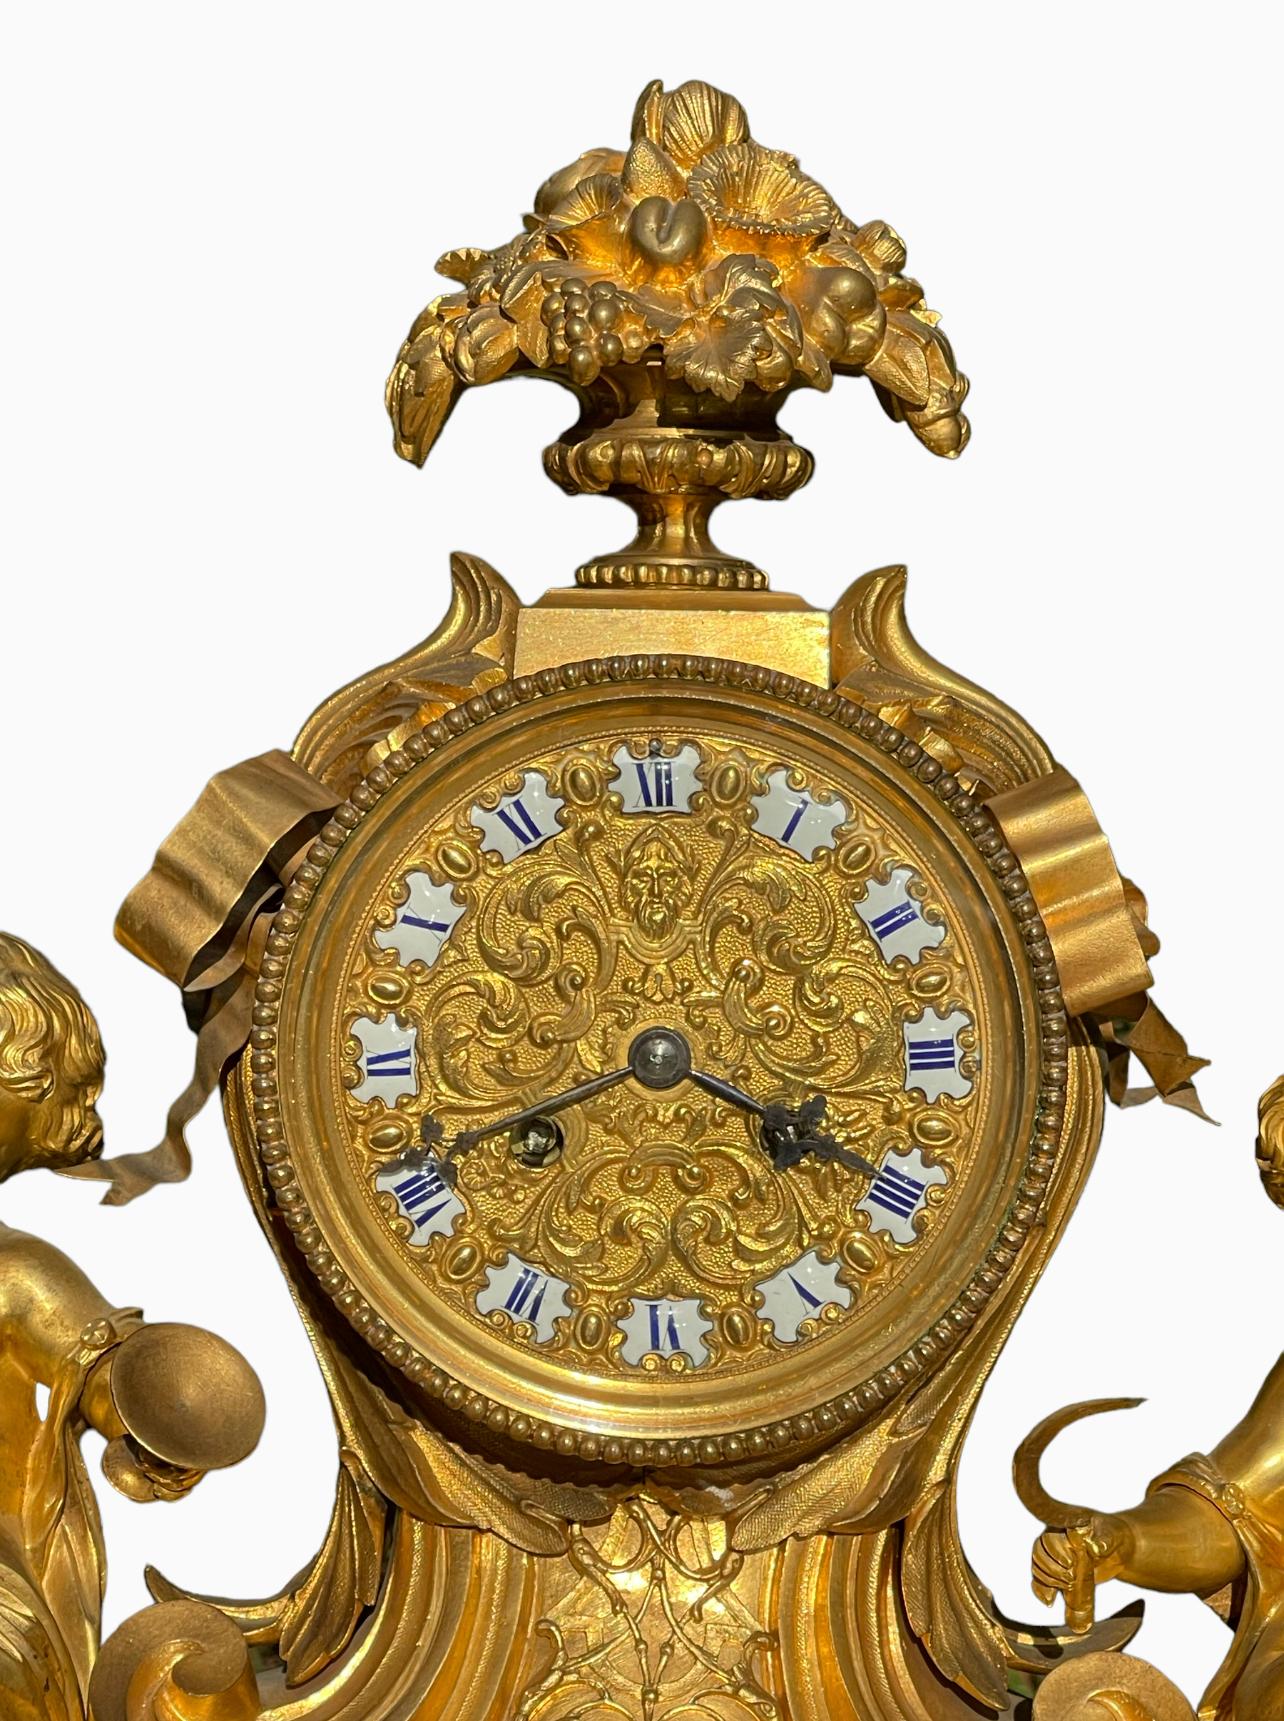 Très joli modèle pour cette pendule en bronze doré d'époque Napoléon III dans le style Louis XV Rocaille datant du 19ème siècle. Très belle qualité de dorure et entièrement originale. Complet avec cloche et pendule. Au centre, très beau cadran en